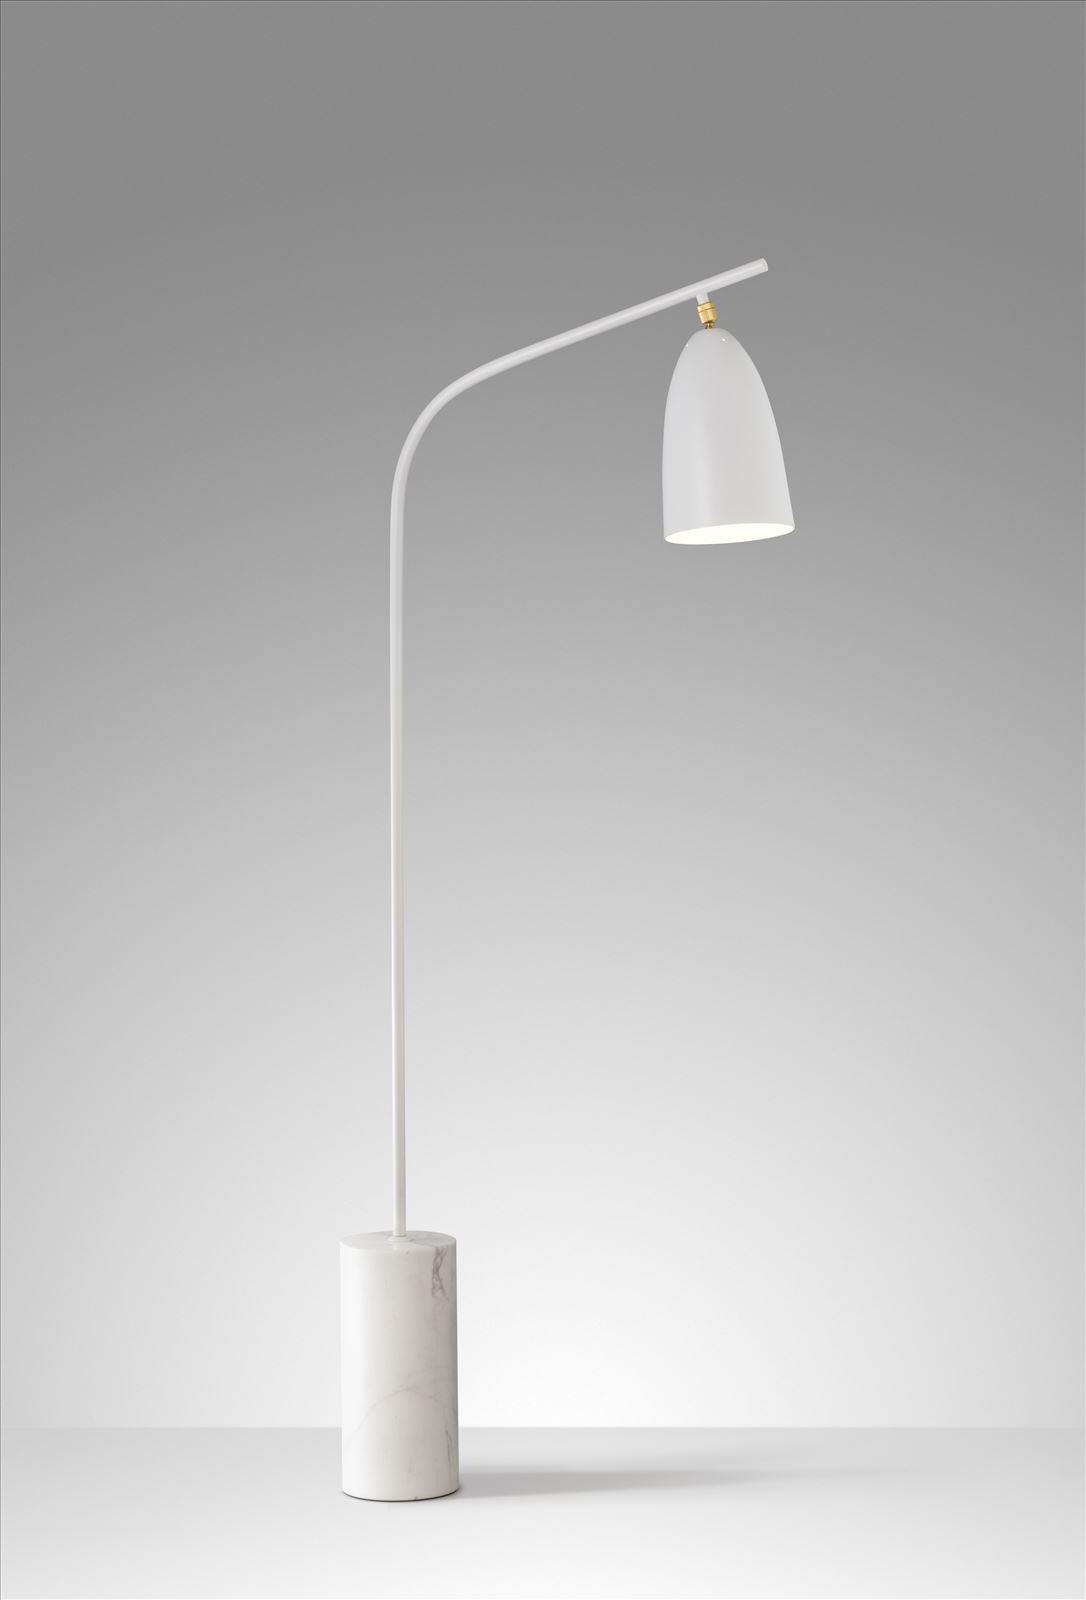 גופי תאורה בקטגוריית: מנורות עמידה  ,שם המוצר: GLAM